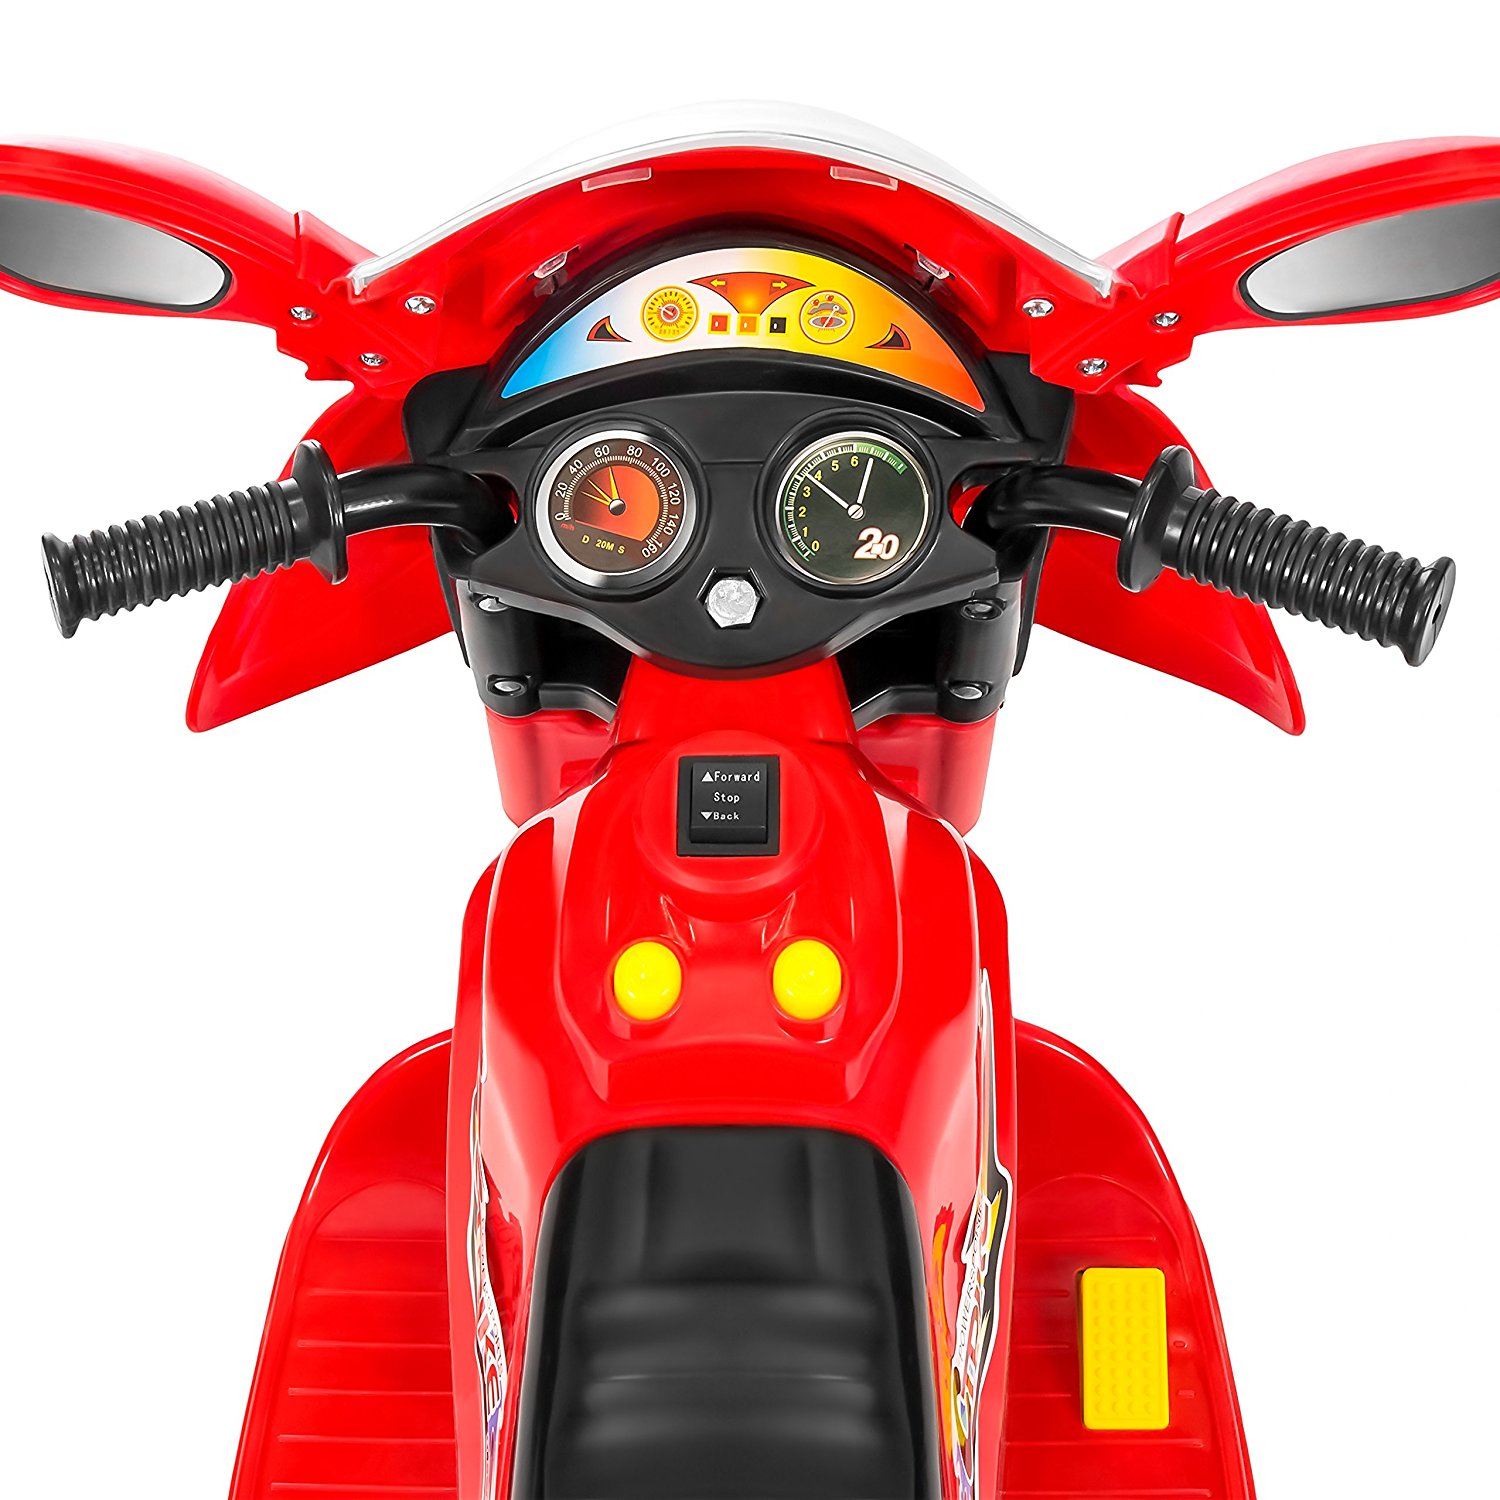 Moto Elétrica Infantil a Bateria 6V com Sons e Luzes, Idade Rec 3 a 6 Anos,  BEST CHOICE PRODUCTS, Verde - Dular